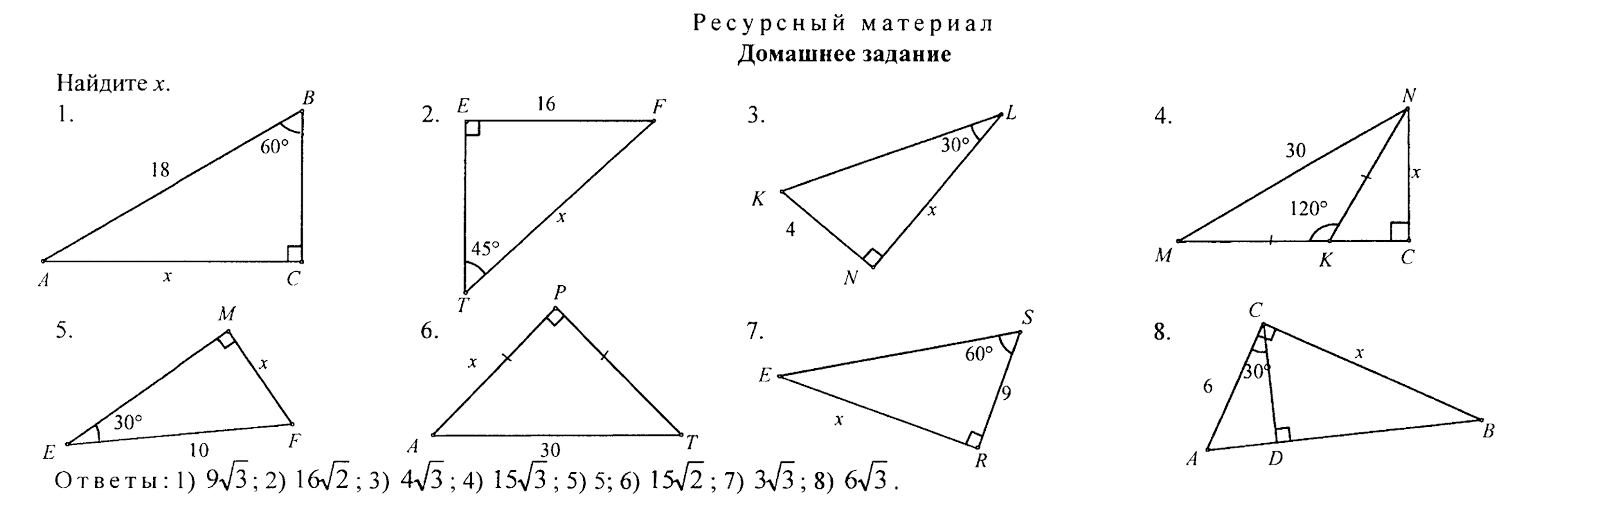 Тест по геометрии 8 класс синус косинус. Задачи на готовых чертежах 8 класс синусы. Соотношение между сторонами в прямоугольном треугольнике 8 класс. Соотношение сторон и углов в прямоугольном треугольнике 8 класс. Соотношение между сторонами и углами прямоугольного треугольника.